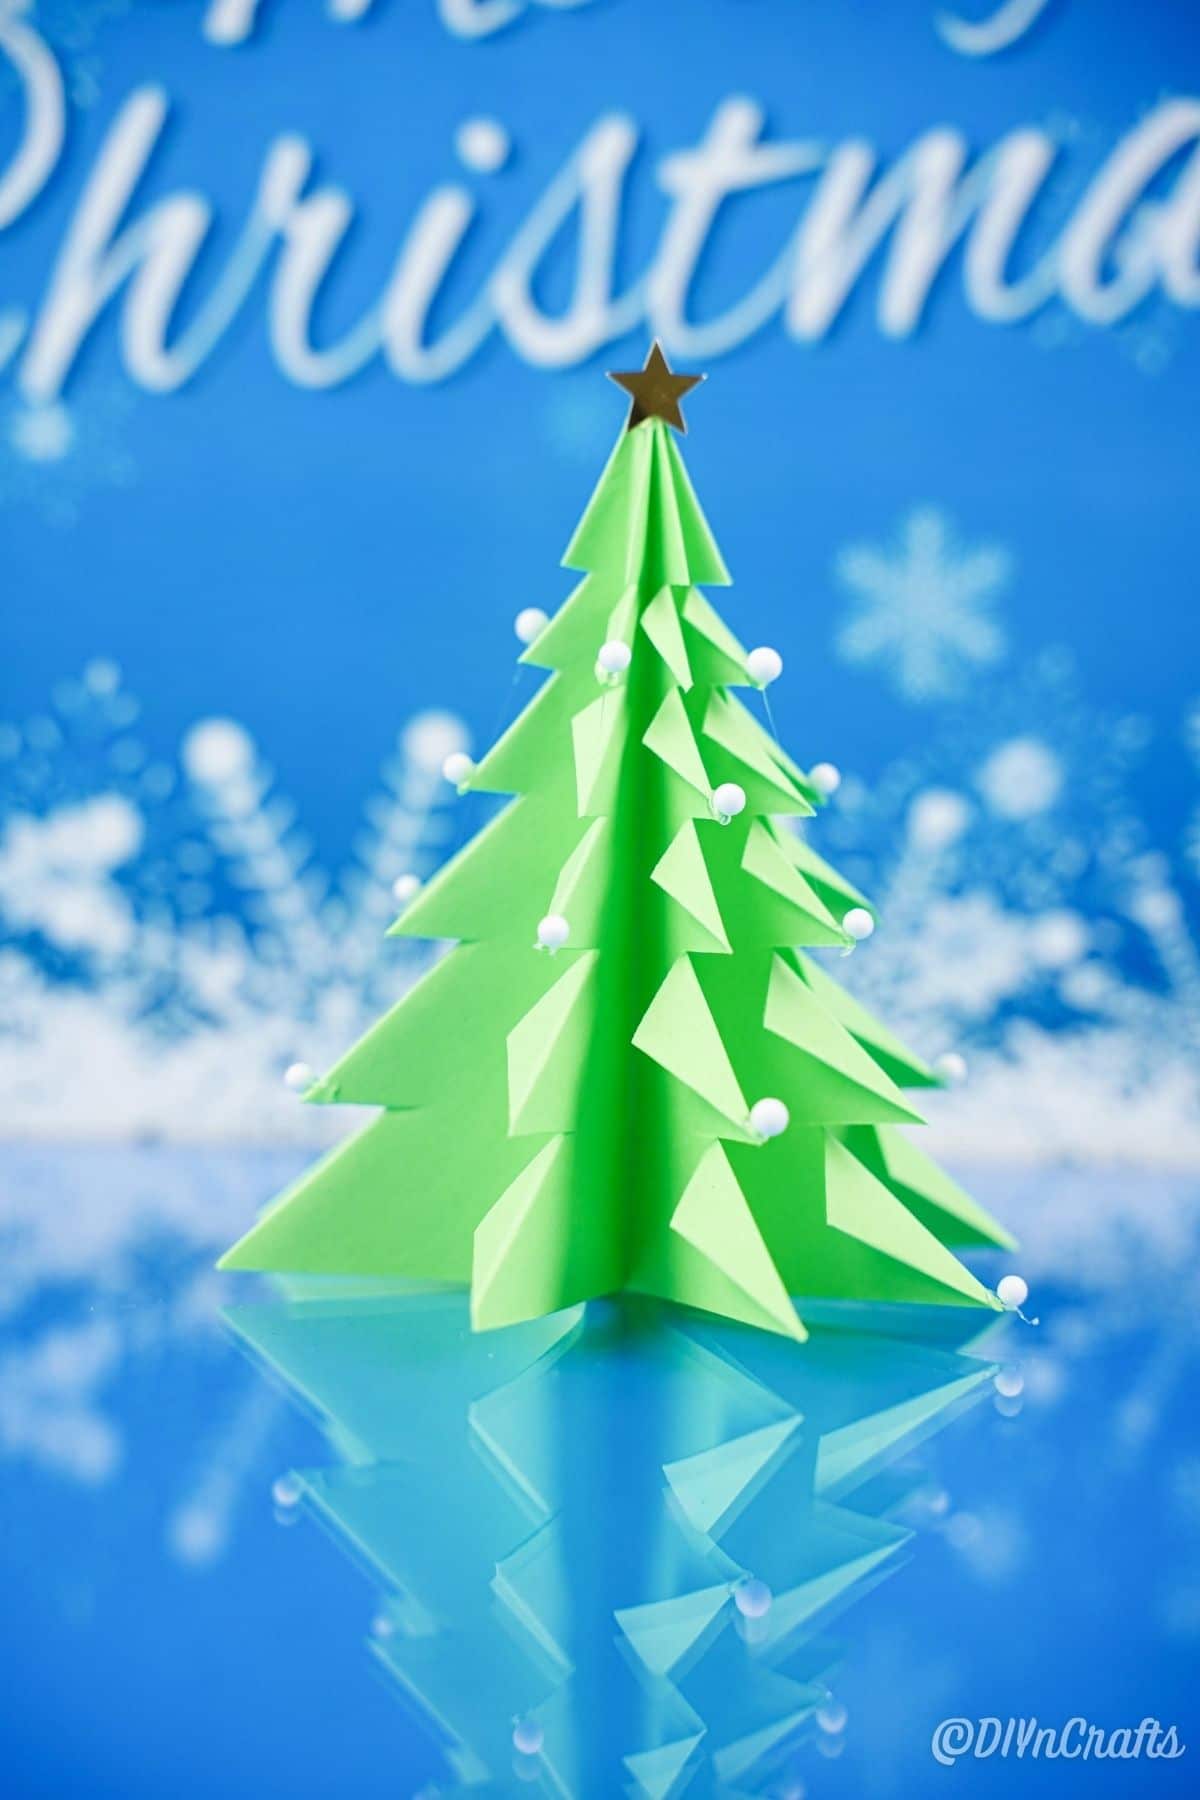 papirnato 3d božično drevo na modri površini s ponarejenim snežnim ozadjem